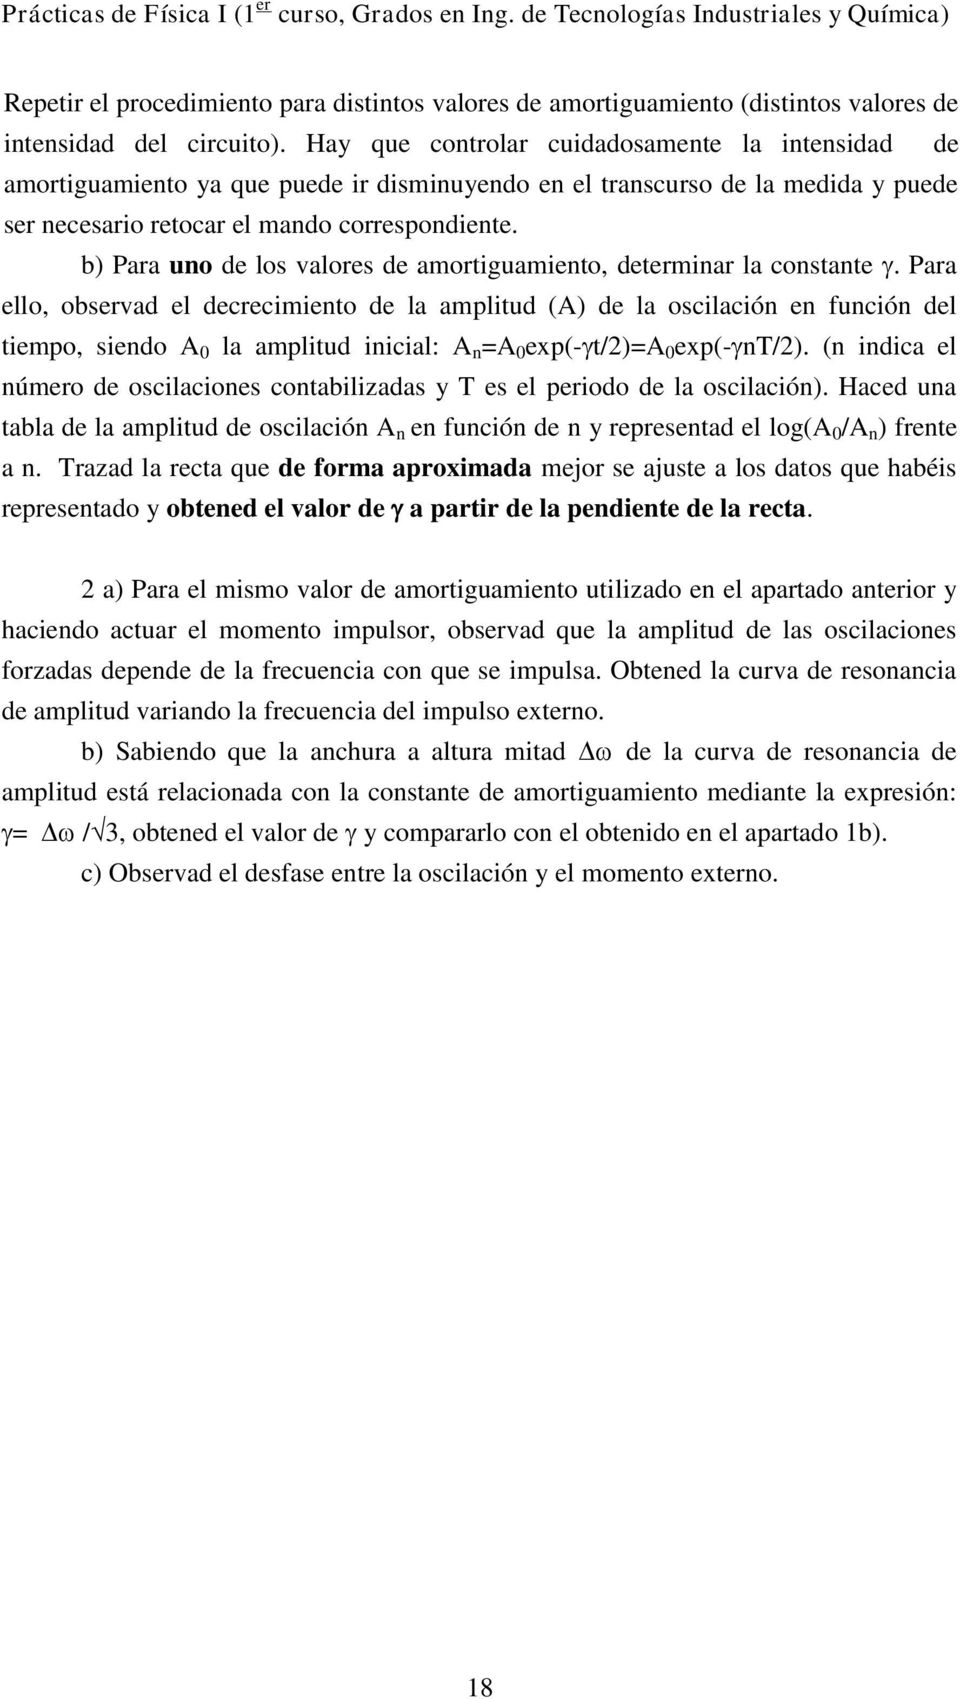 b) Para uno de los valores de amortguamento, determnar la constante.